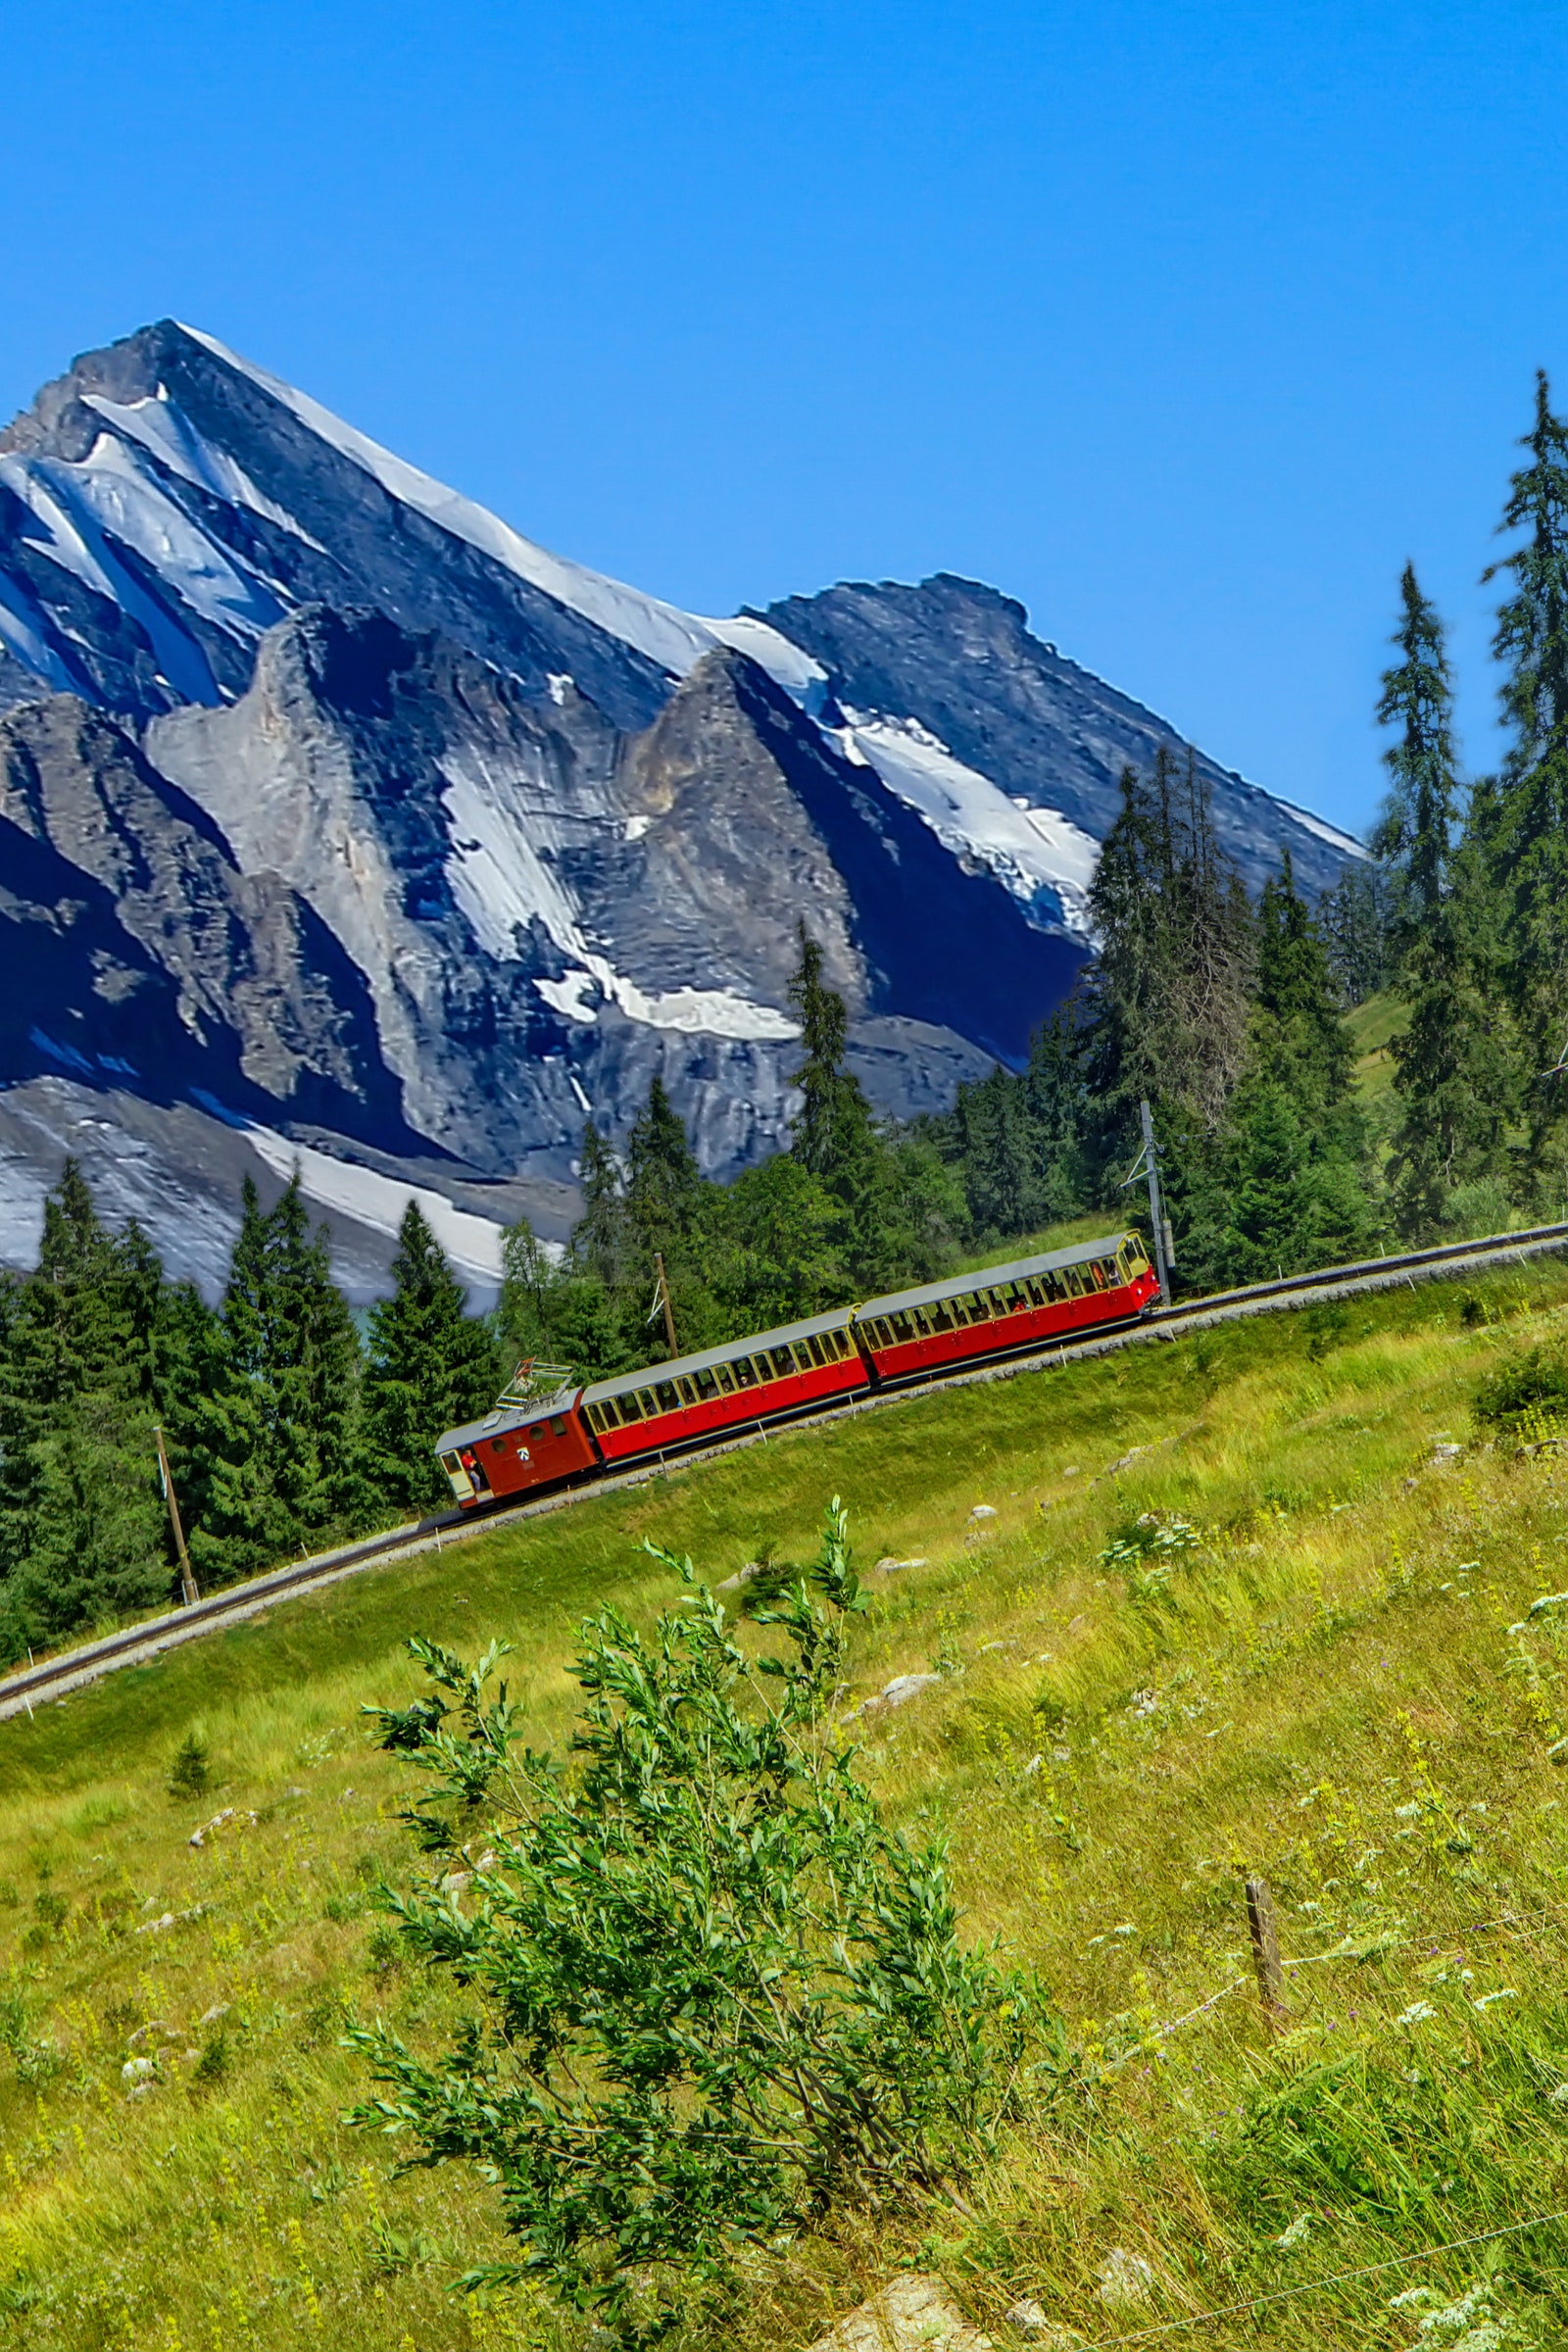 シーニゲ プラッテ鉄道は、スイスのベルナー高地地域にある登山鉄道です。